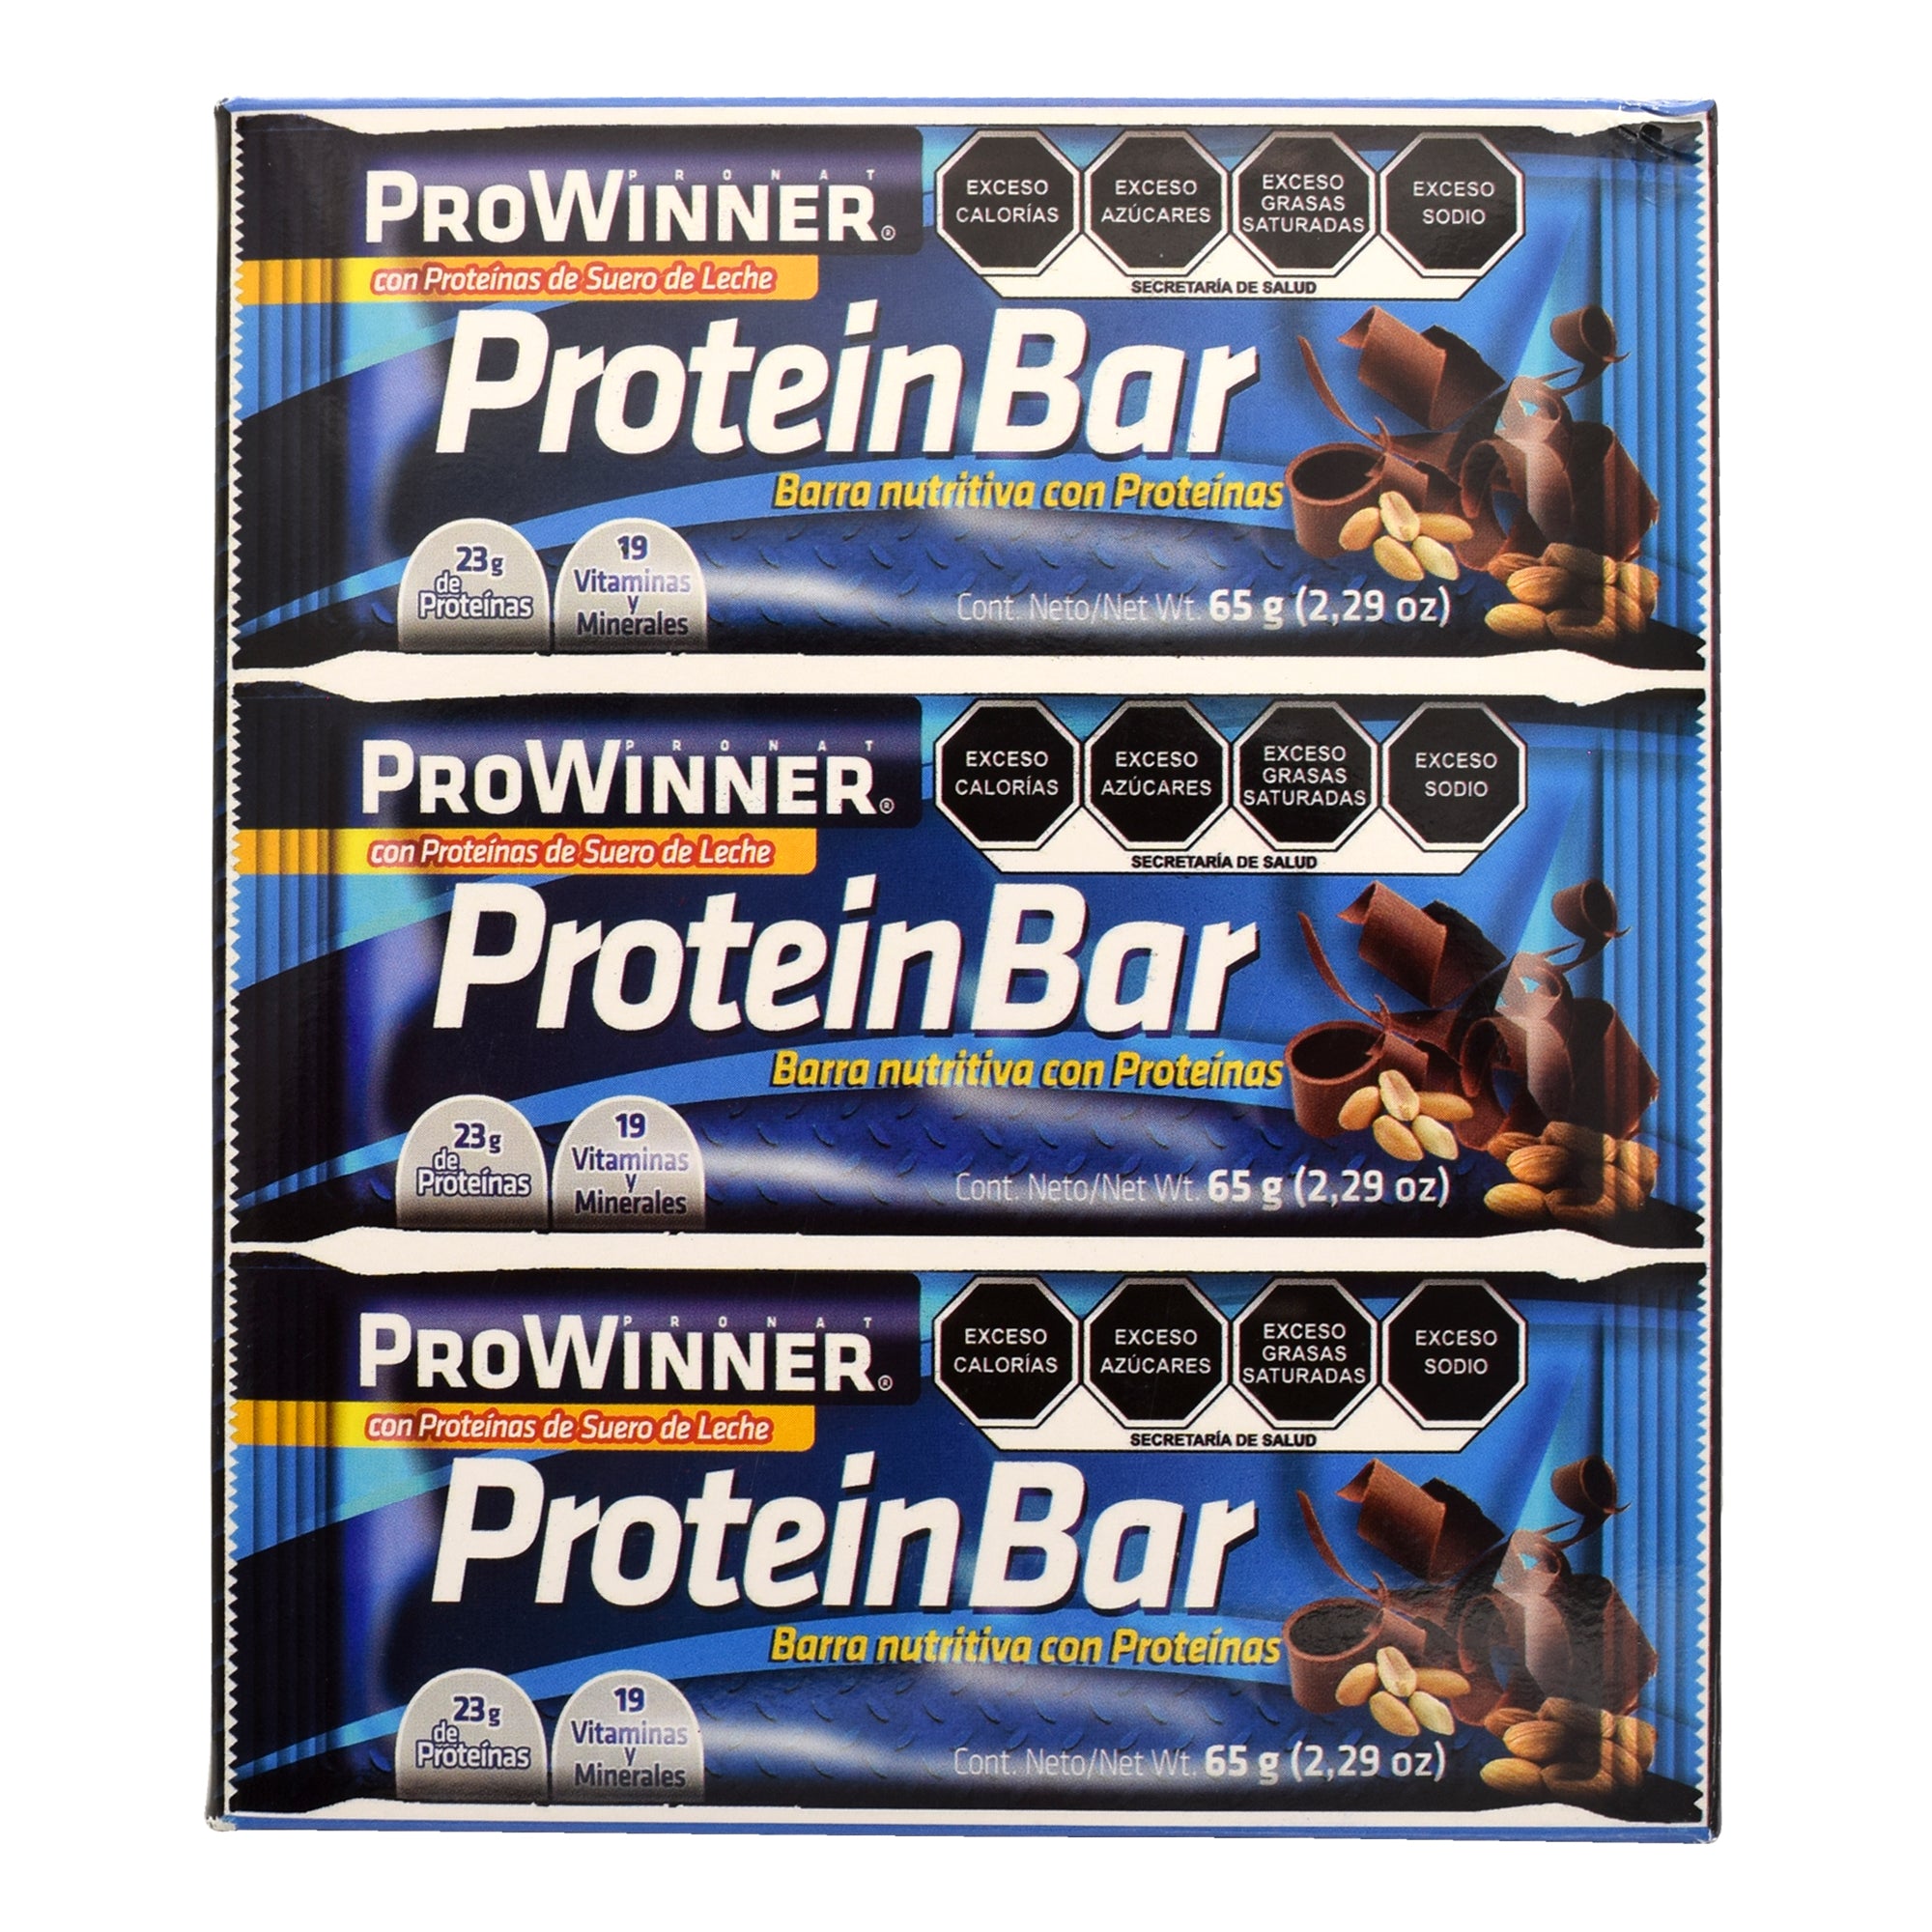 Barra protein 65 g (PAQUETE 6)